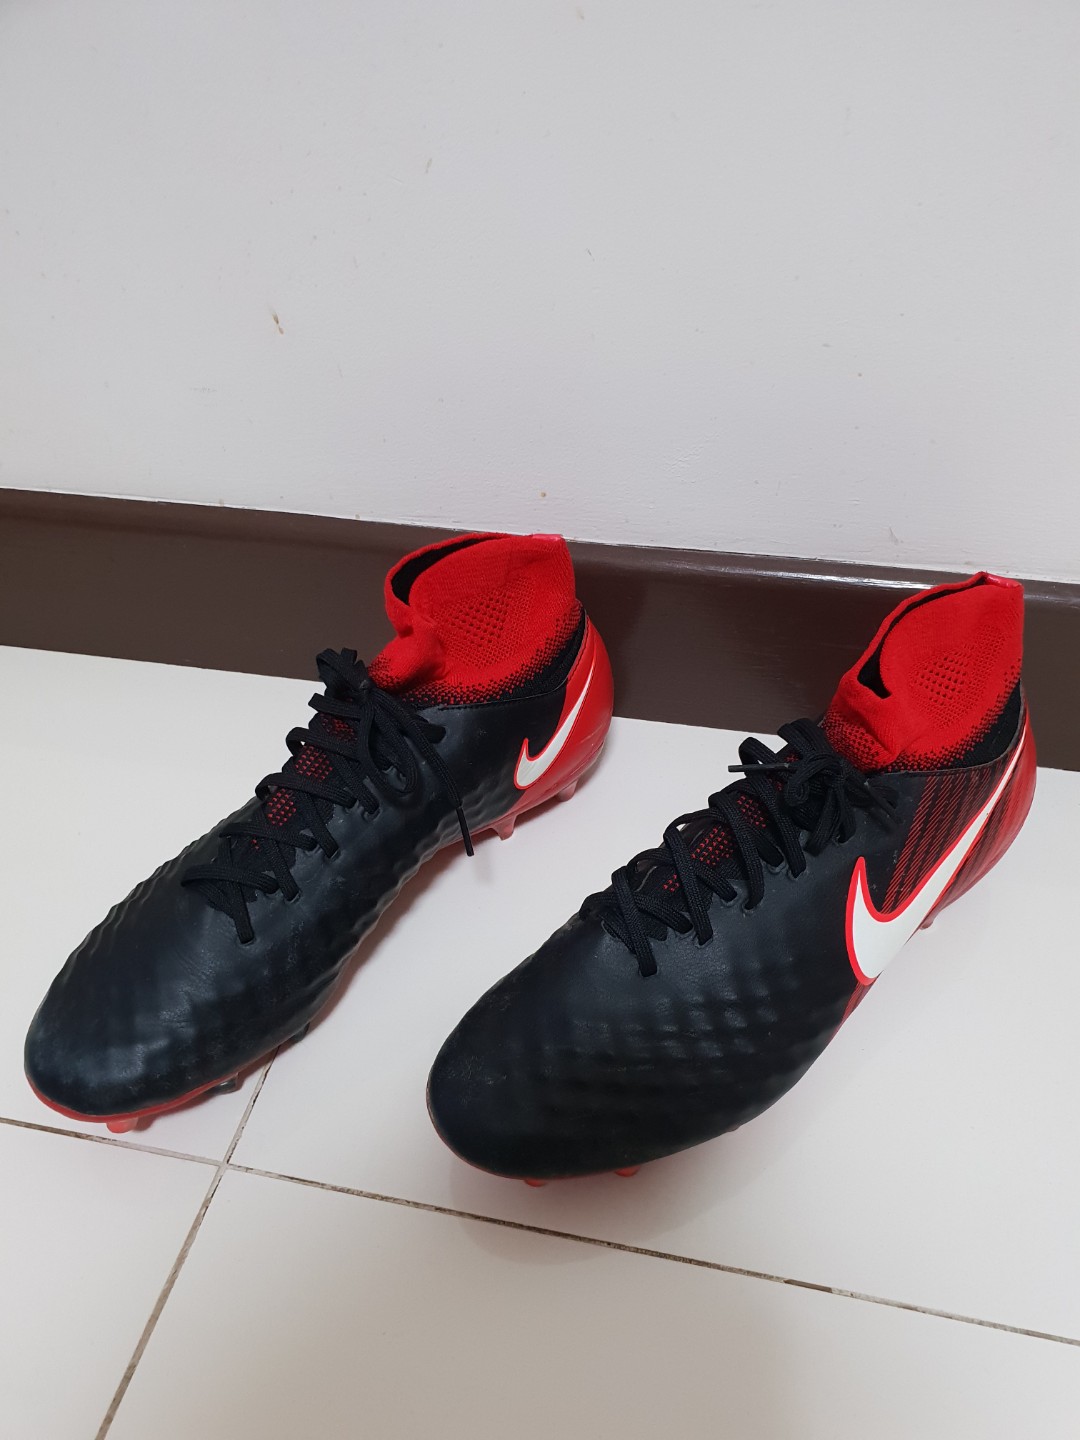 Nike Magista Obra II Club FG Junior Football Boots Black